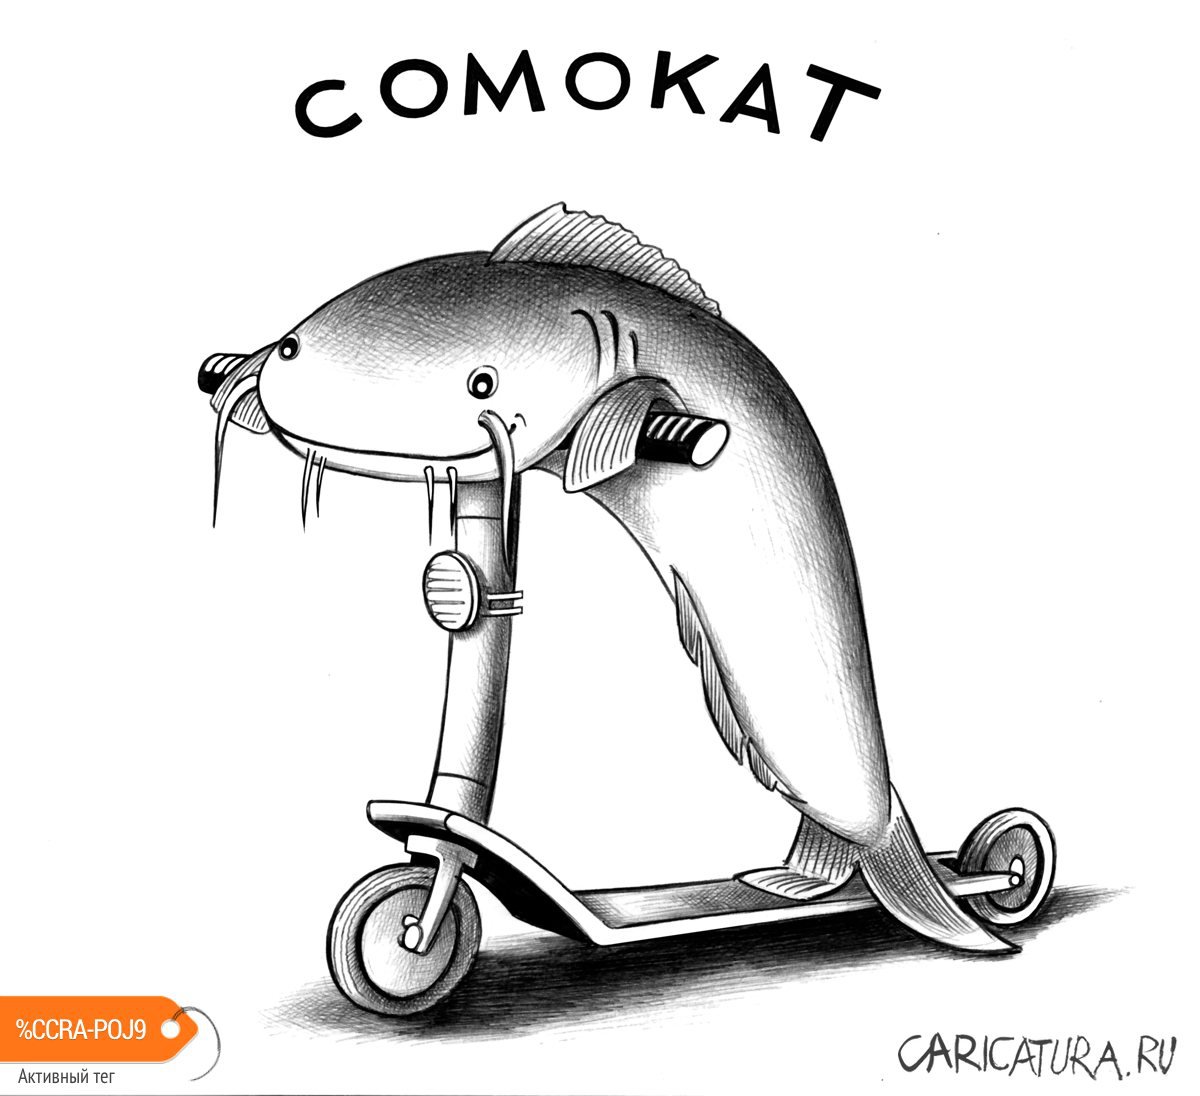 Карикатура "Сомокат", Сергей Корсун